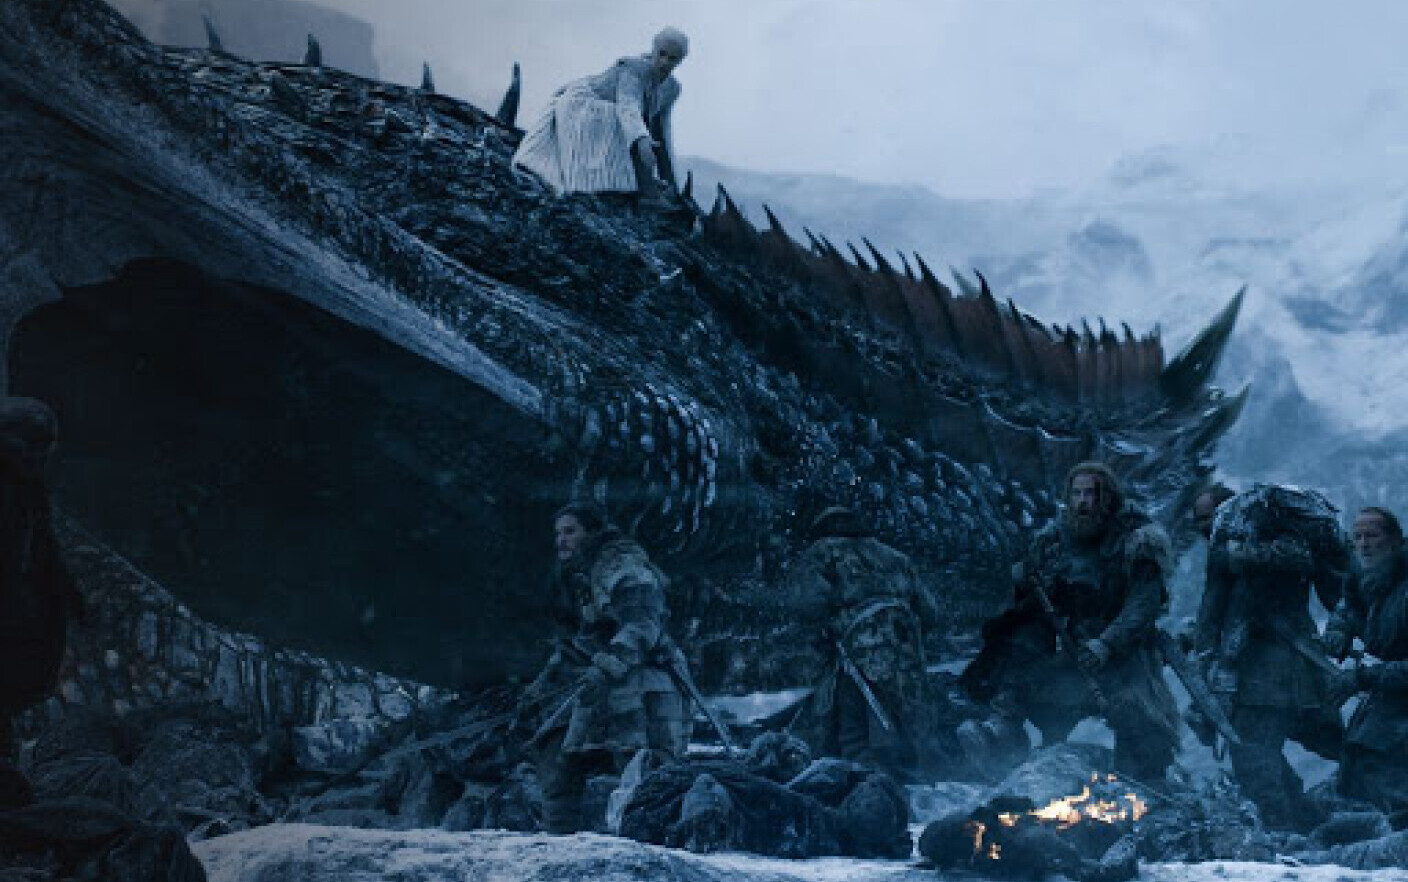 Producătorii Game of Thrones caută locuri de filmare în Transilvania. Ce super vedetă ar putea veni aici